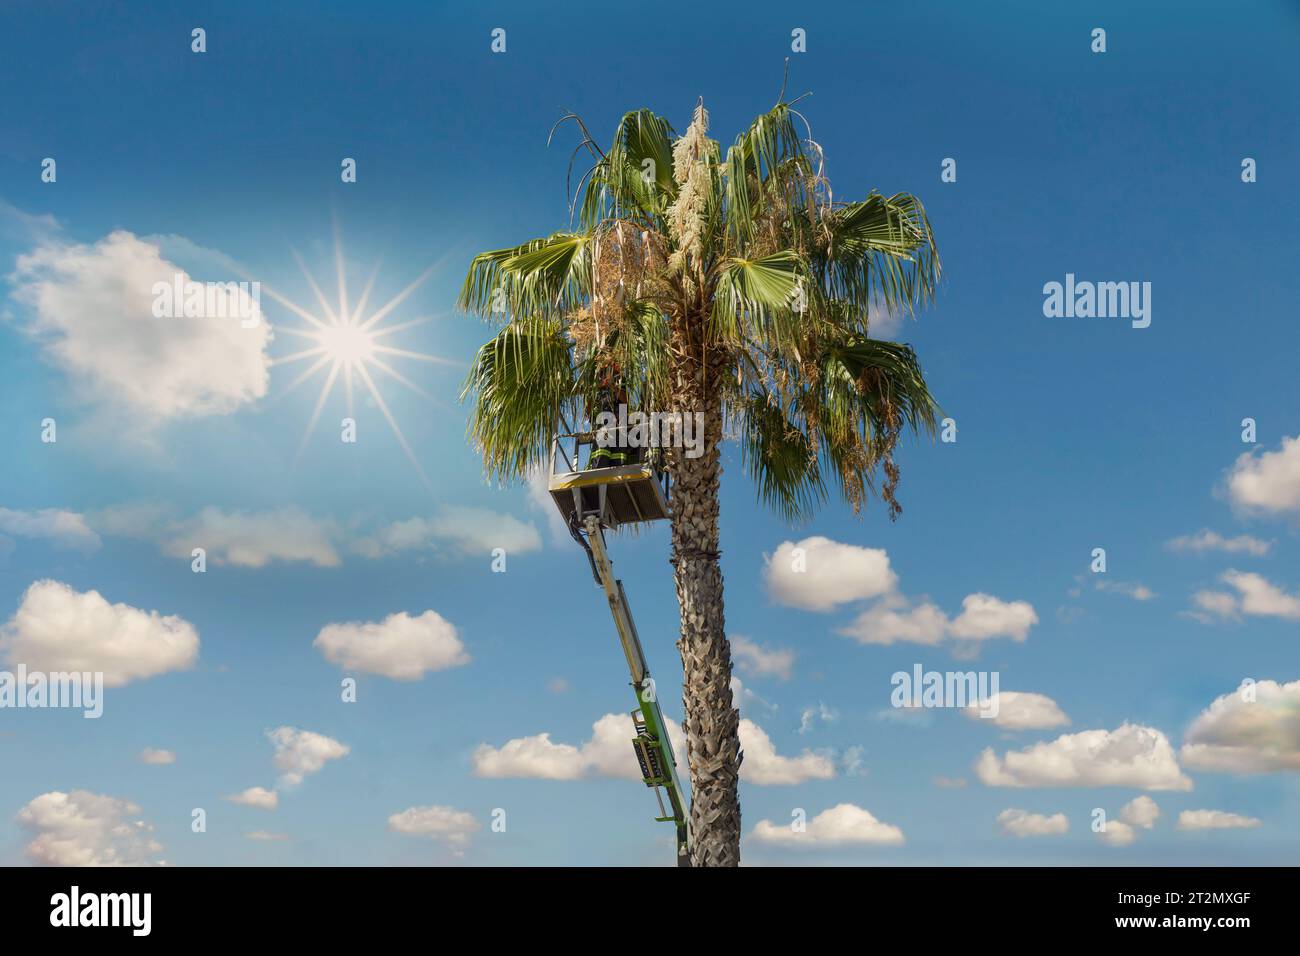 Homme de Miami taillant des palmiers haut dans un cueilleur de cerises Banque D'Images